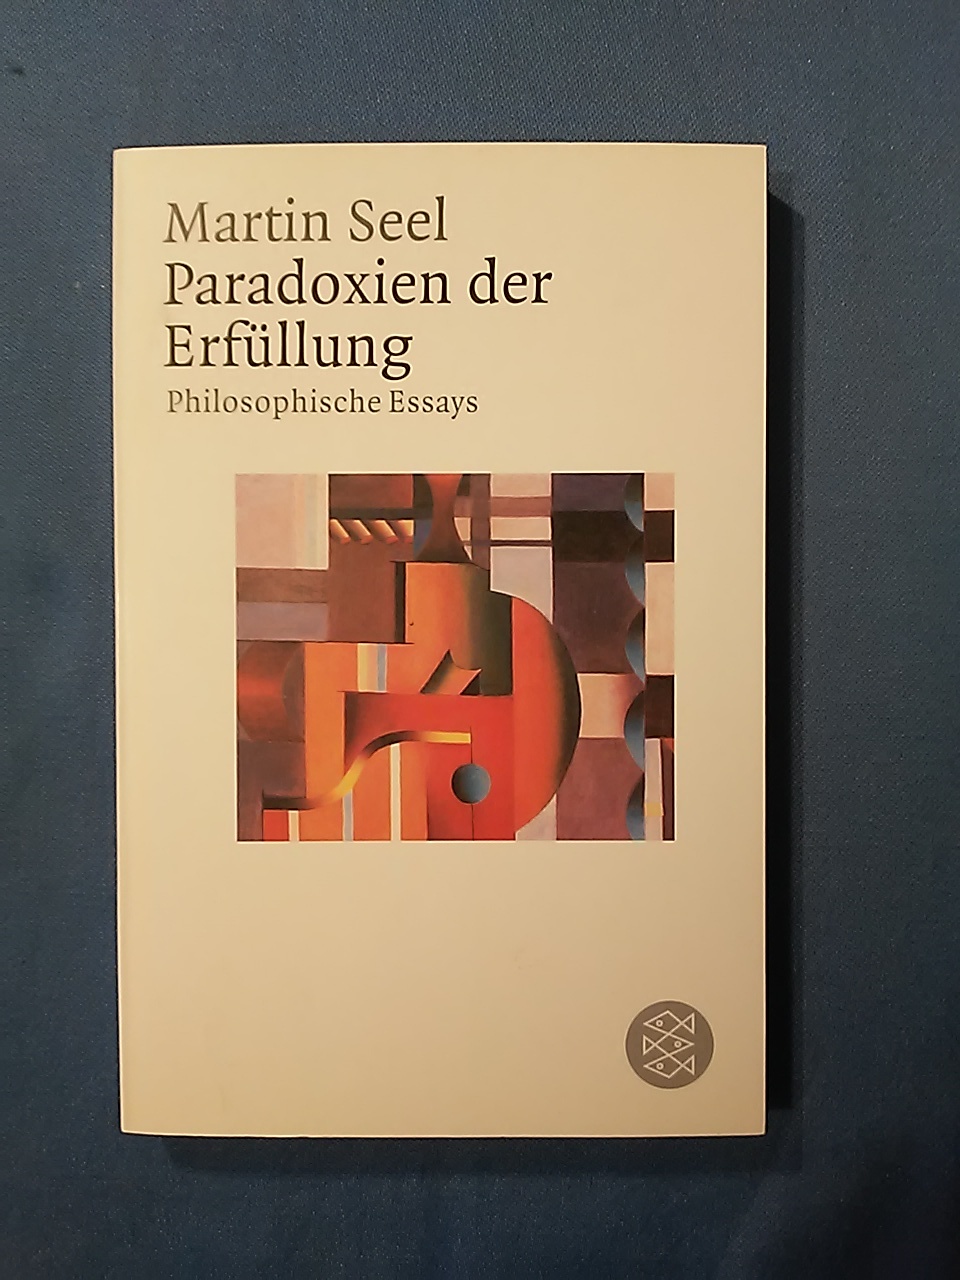 Paradoxien der Erfüllung: Philosophische Essays - Martin Seel.